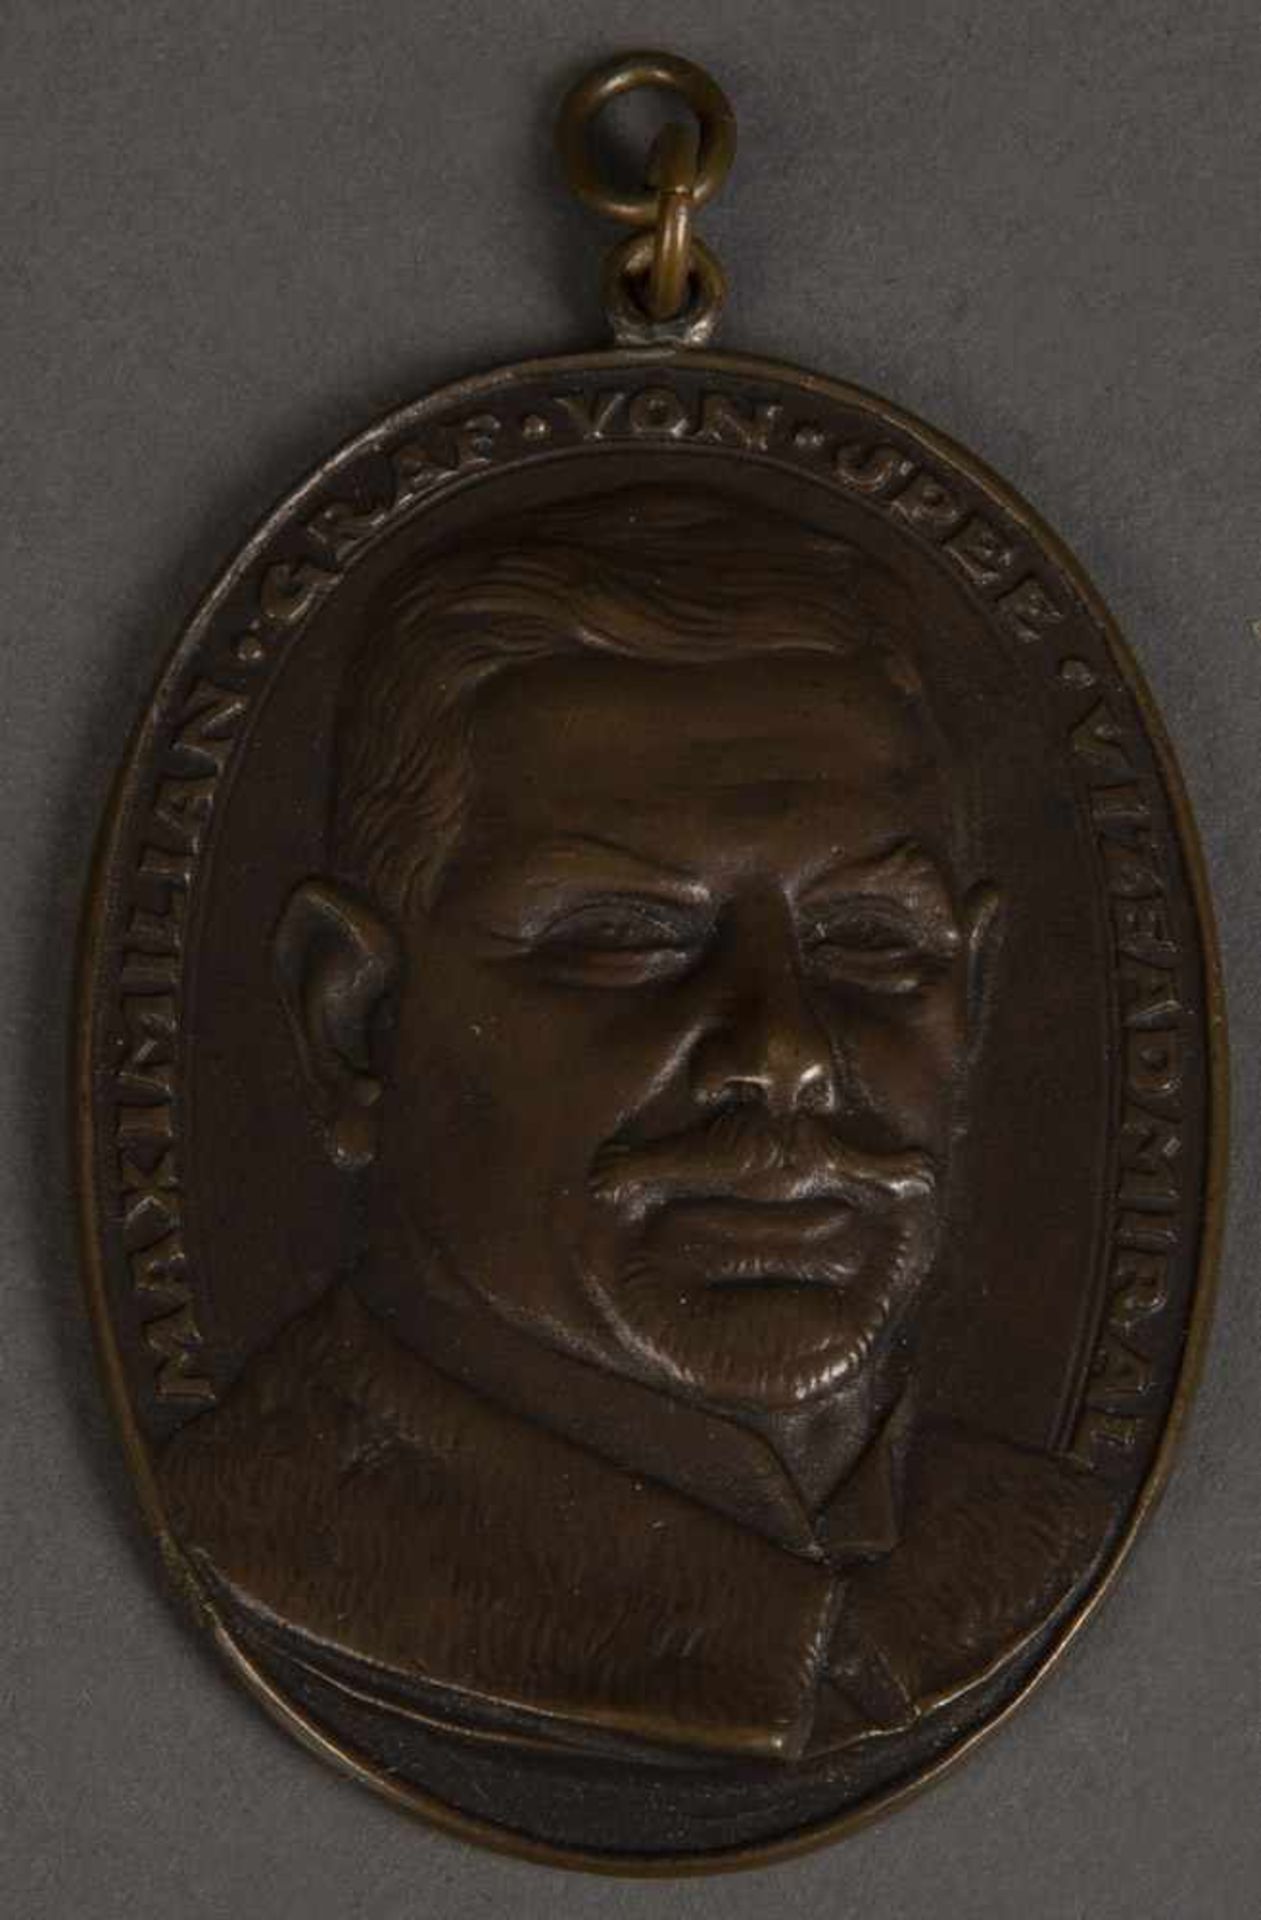 Große Medaille von Maximilian Graf Spee Vizeadmiral zur Erinnerung an die Seeschlacht bei Santa